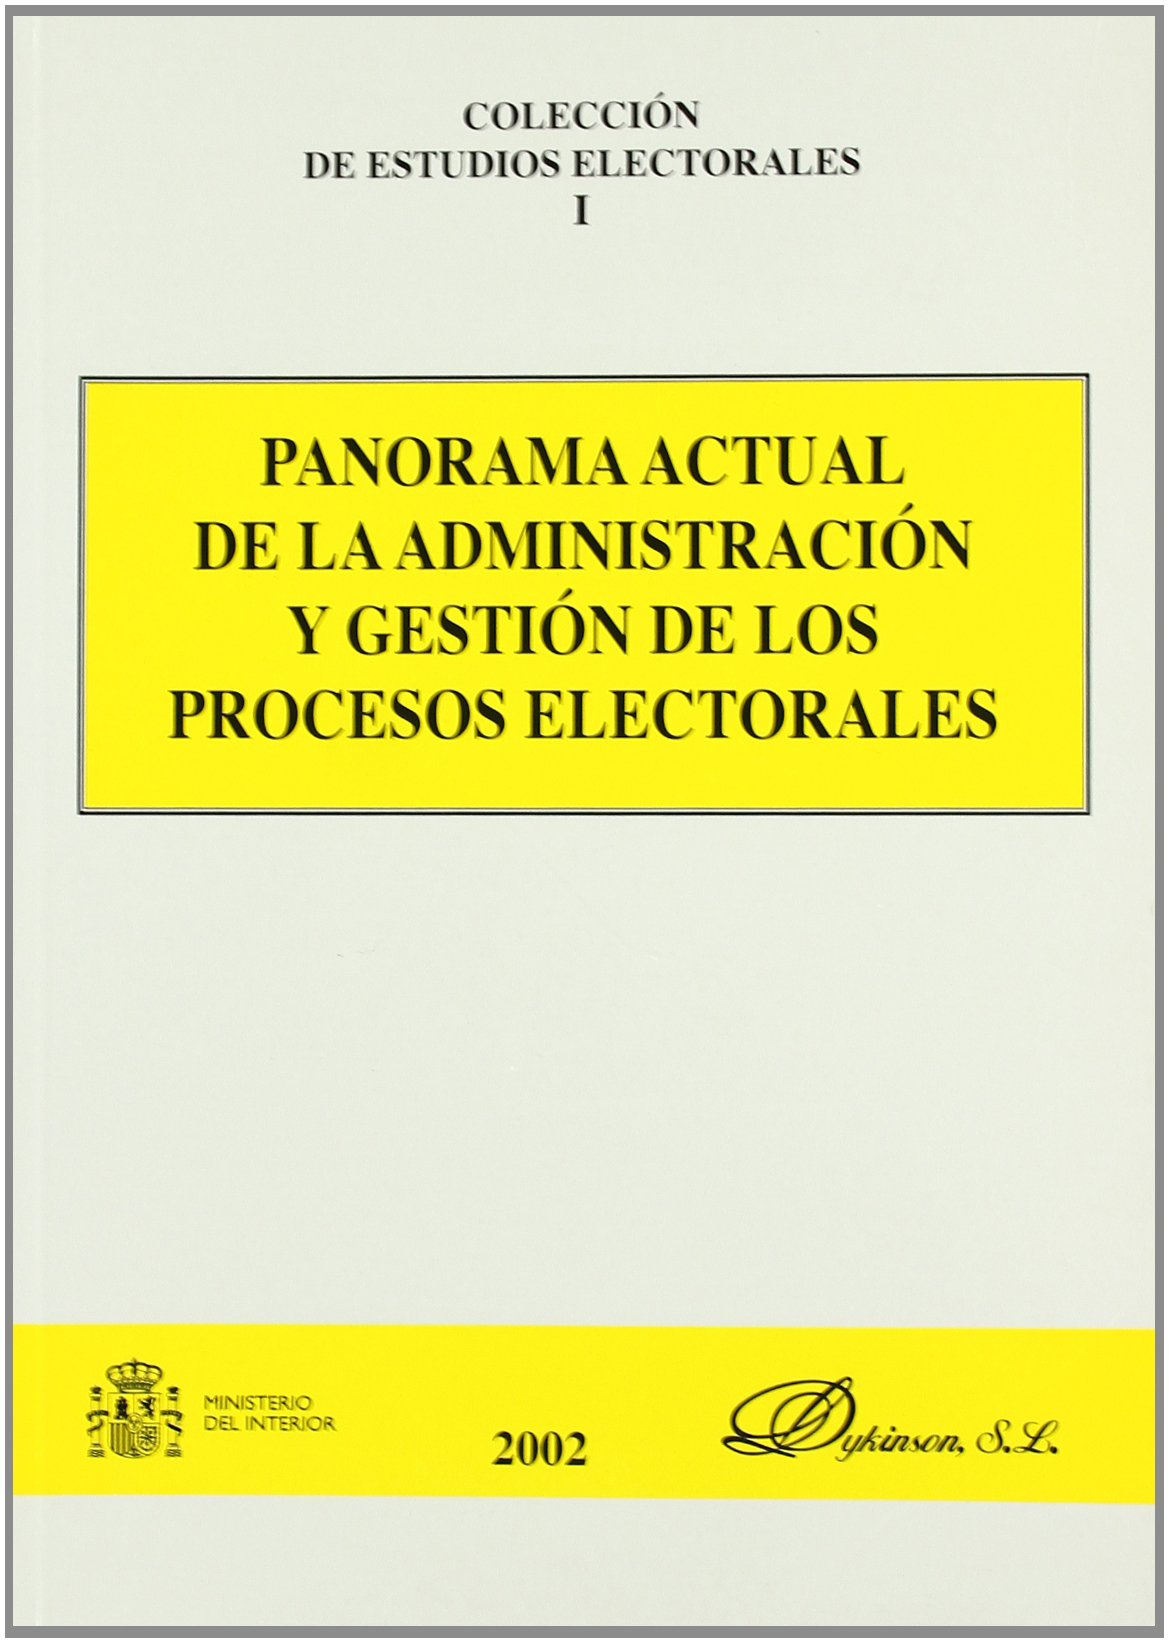 Panorama actual de la administración y gestión de los procesos electorales